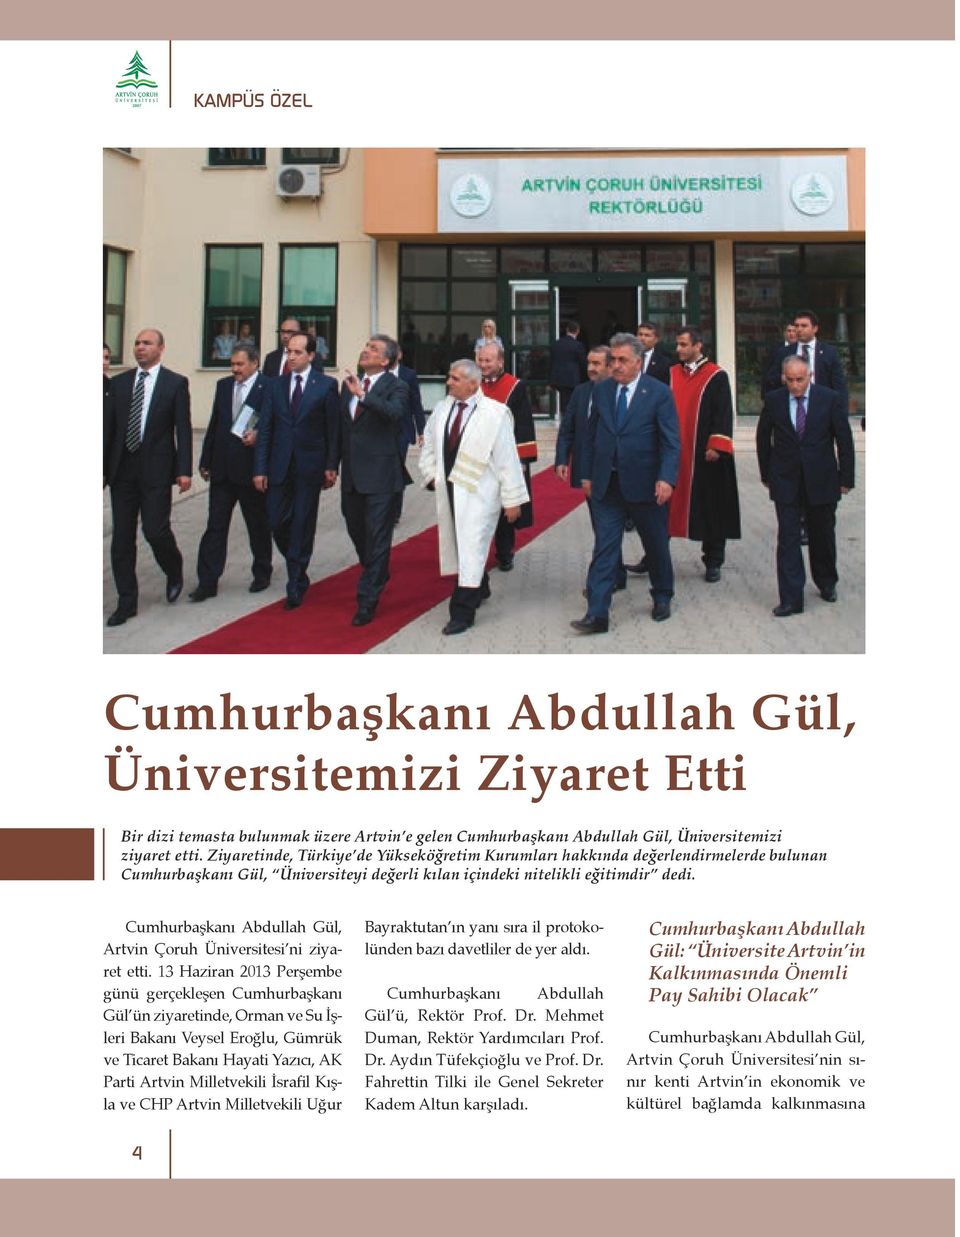 Cumhurbaşkanı Abdullah Gül, Artvin Çoruh Üniversitesi ni ziyaret etti.